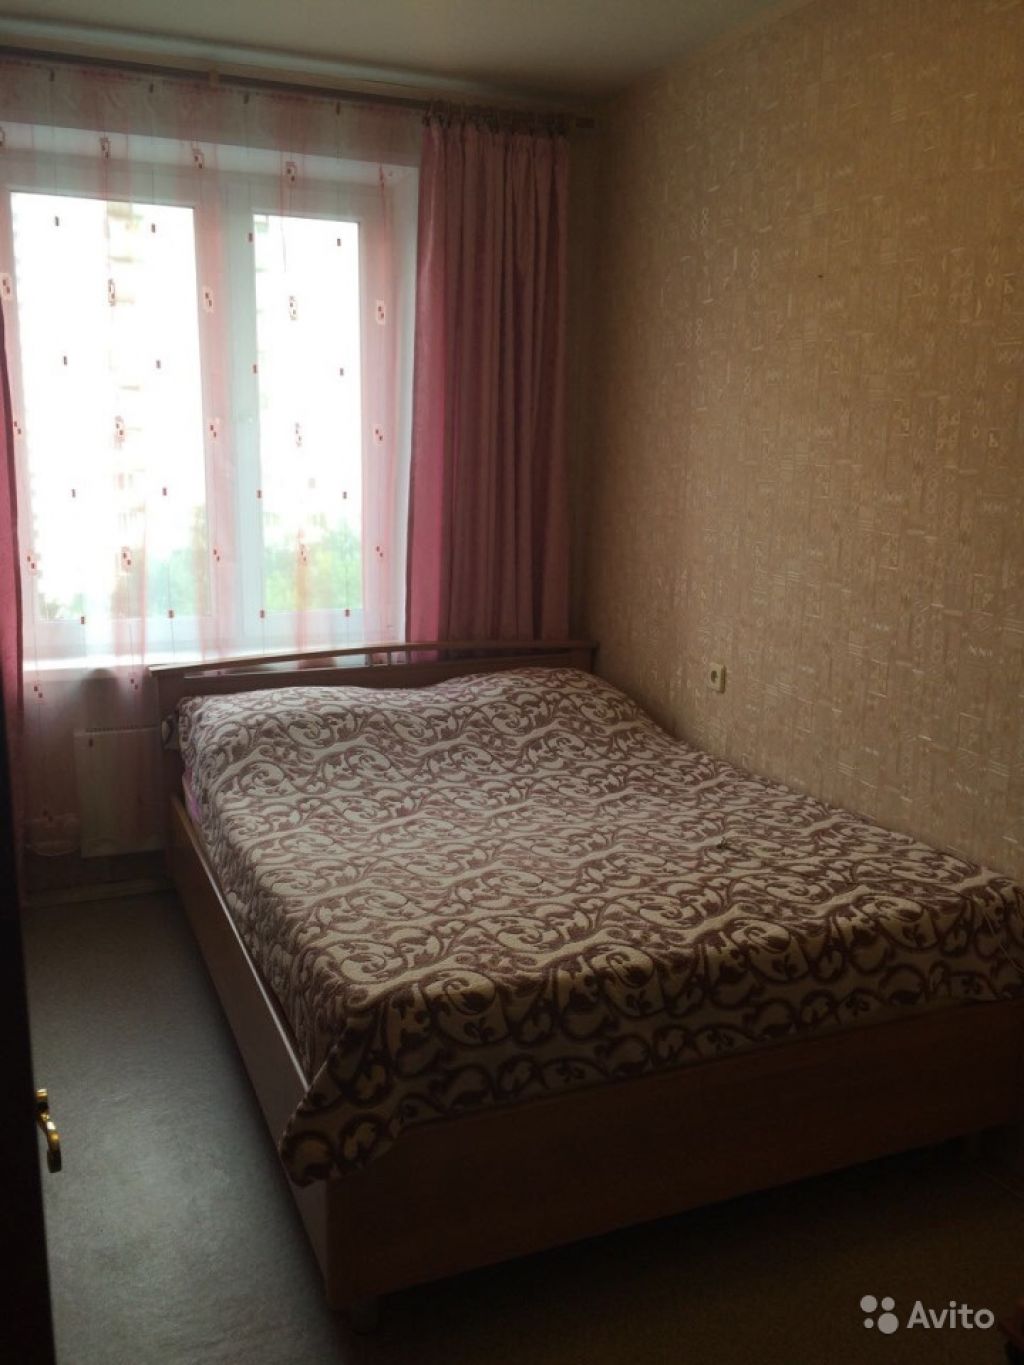 Сдам квартиру 2-к квартира 45 м² на 7 этаже 9-этажного панельного дома в Москве. Фото 1